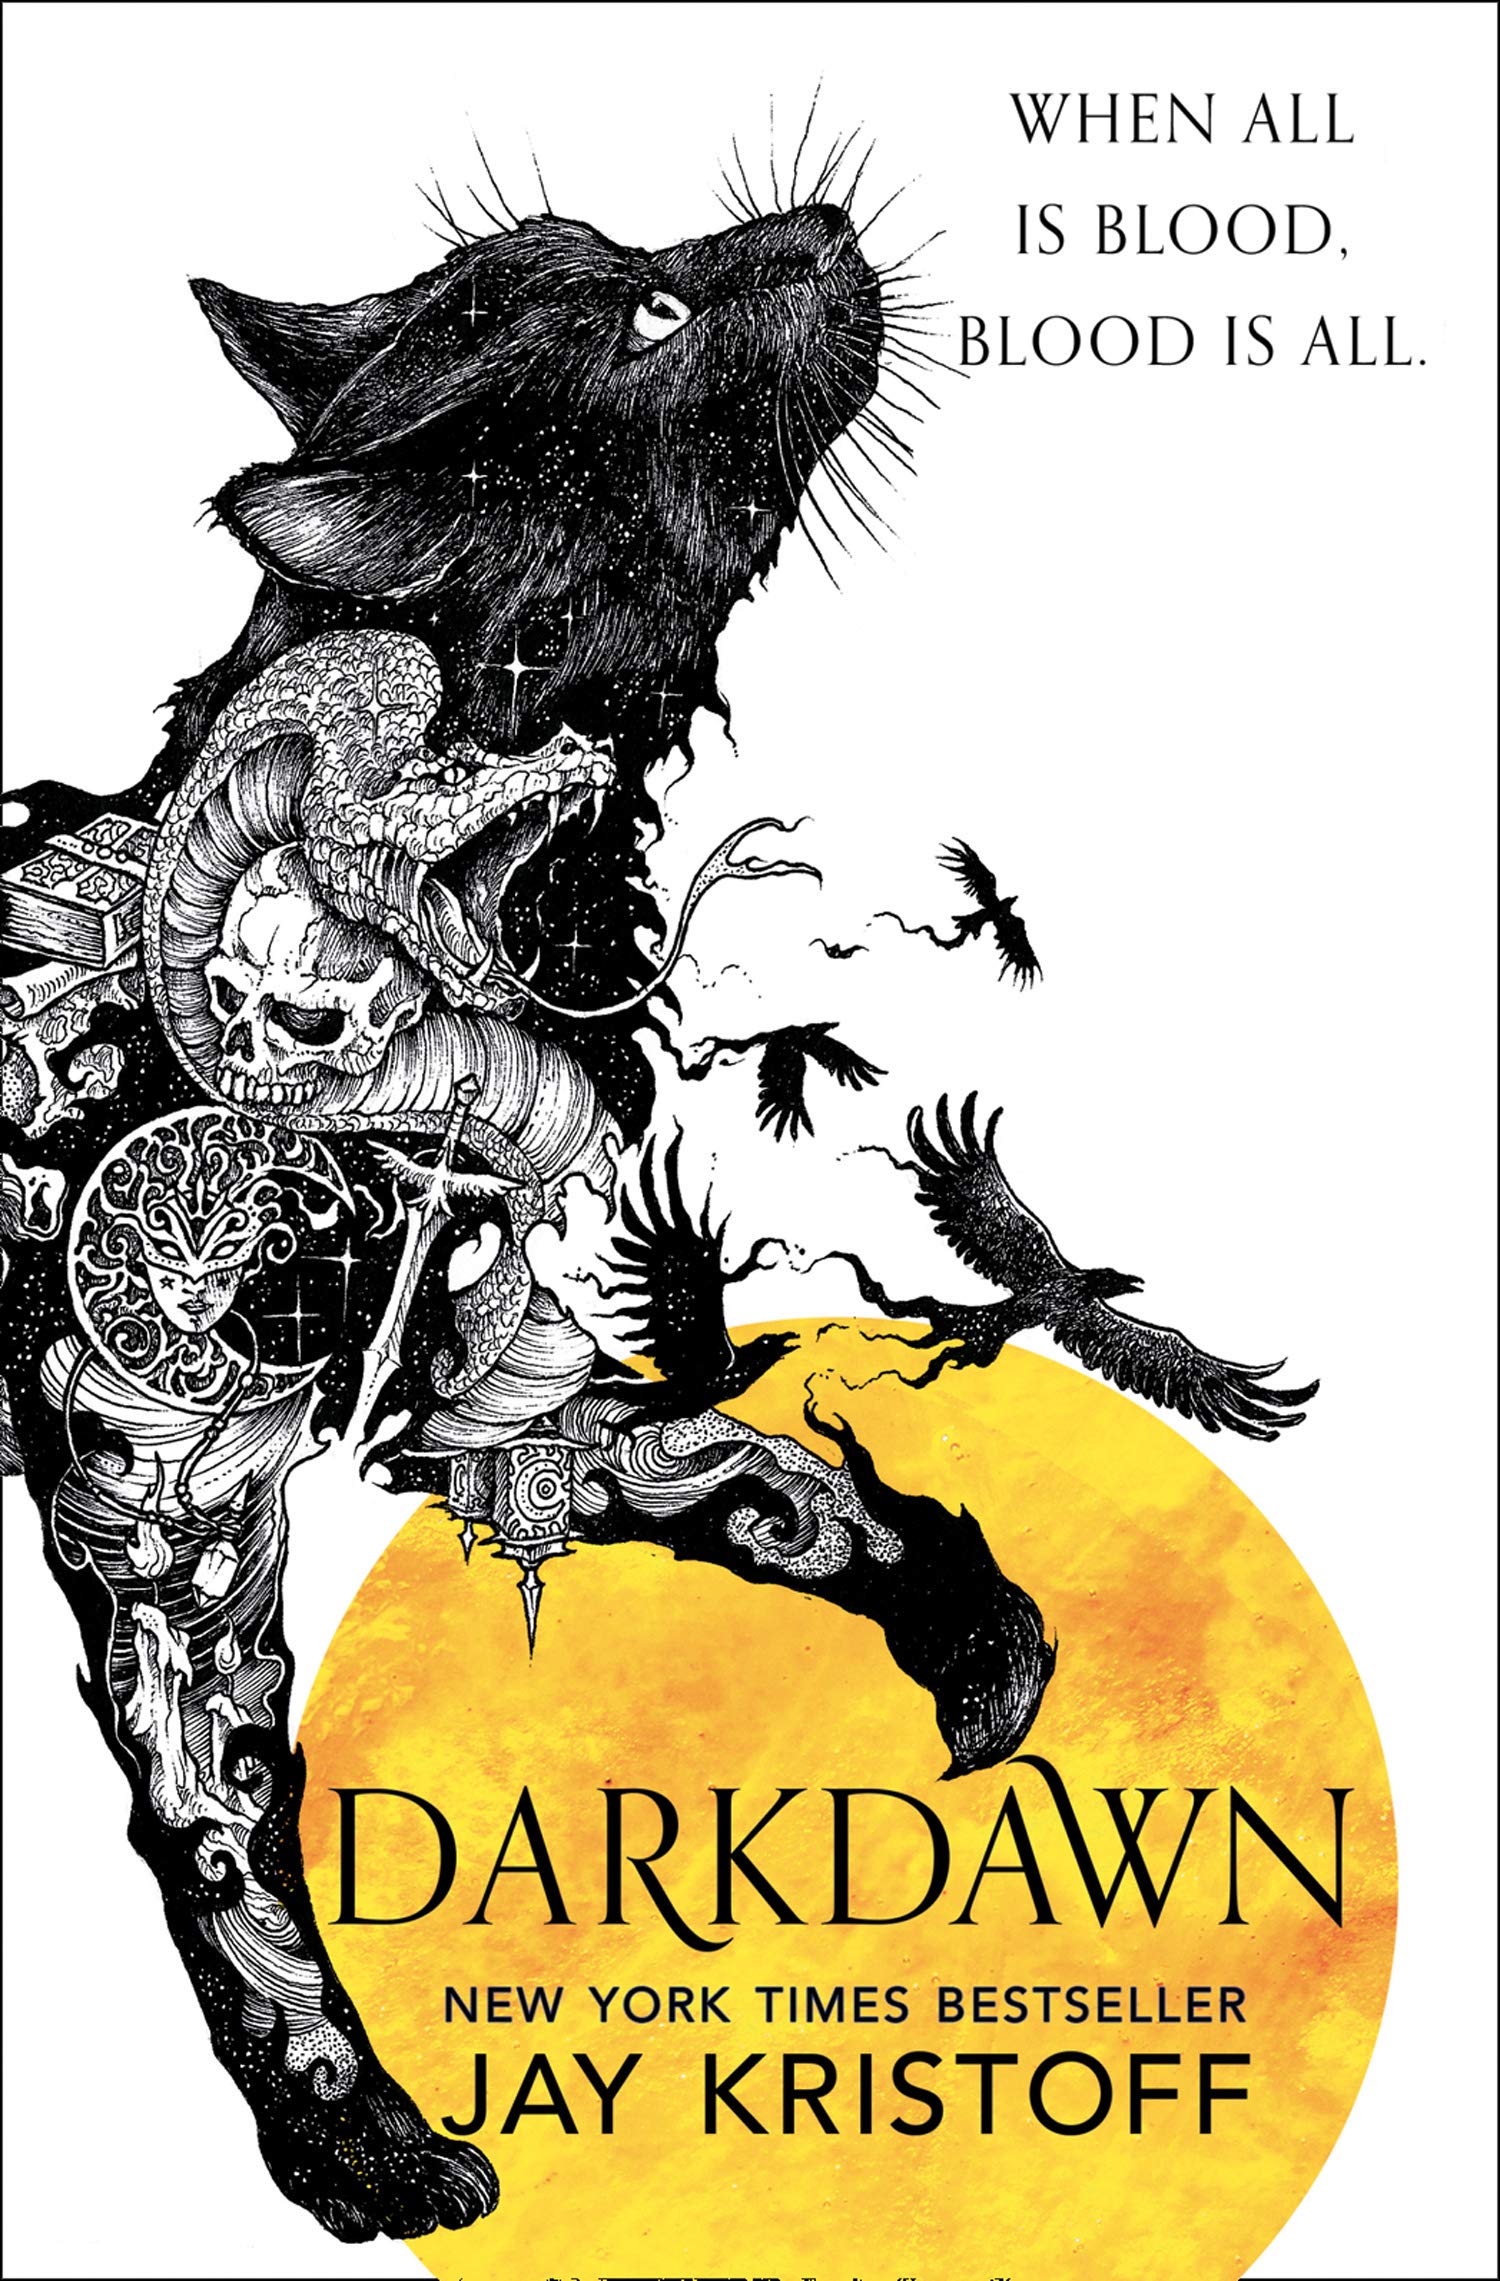 Darkdawn by Jay Kristoff UK cover art